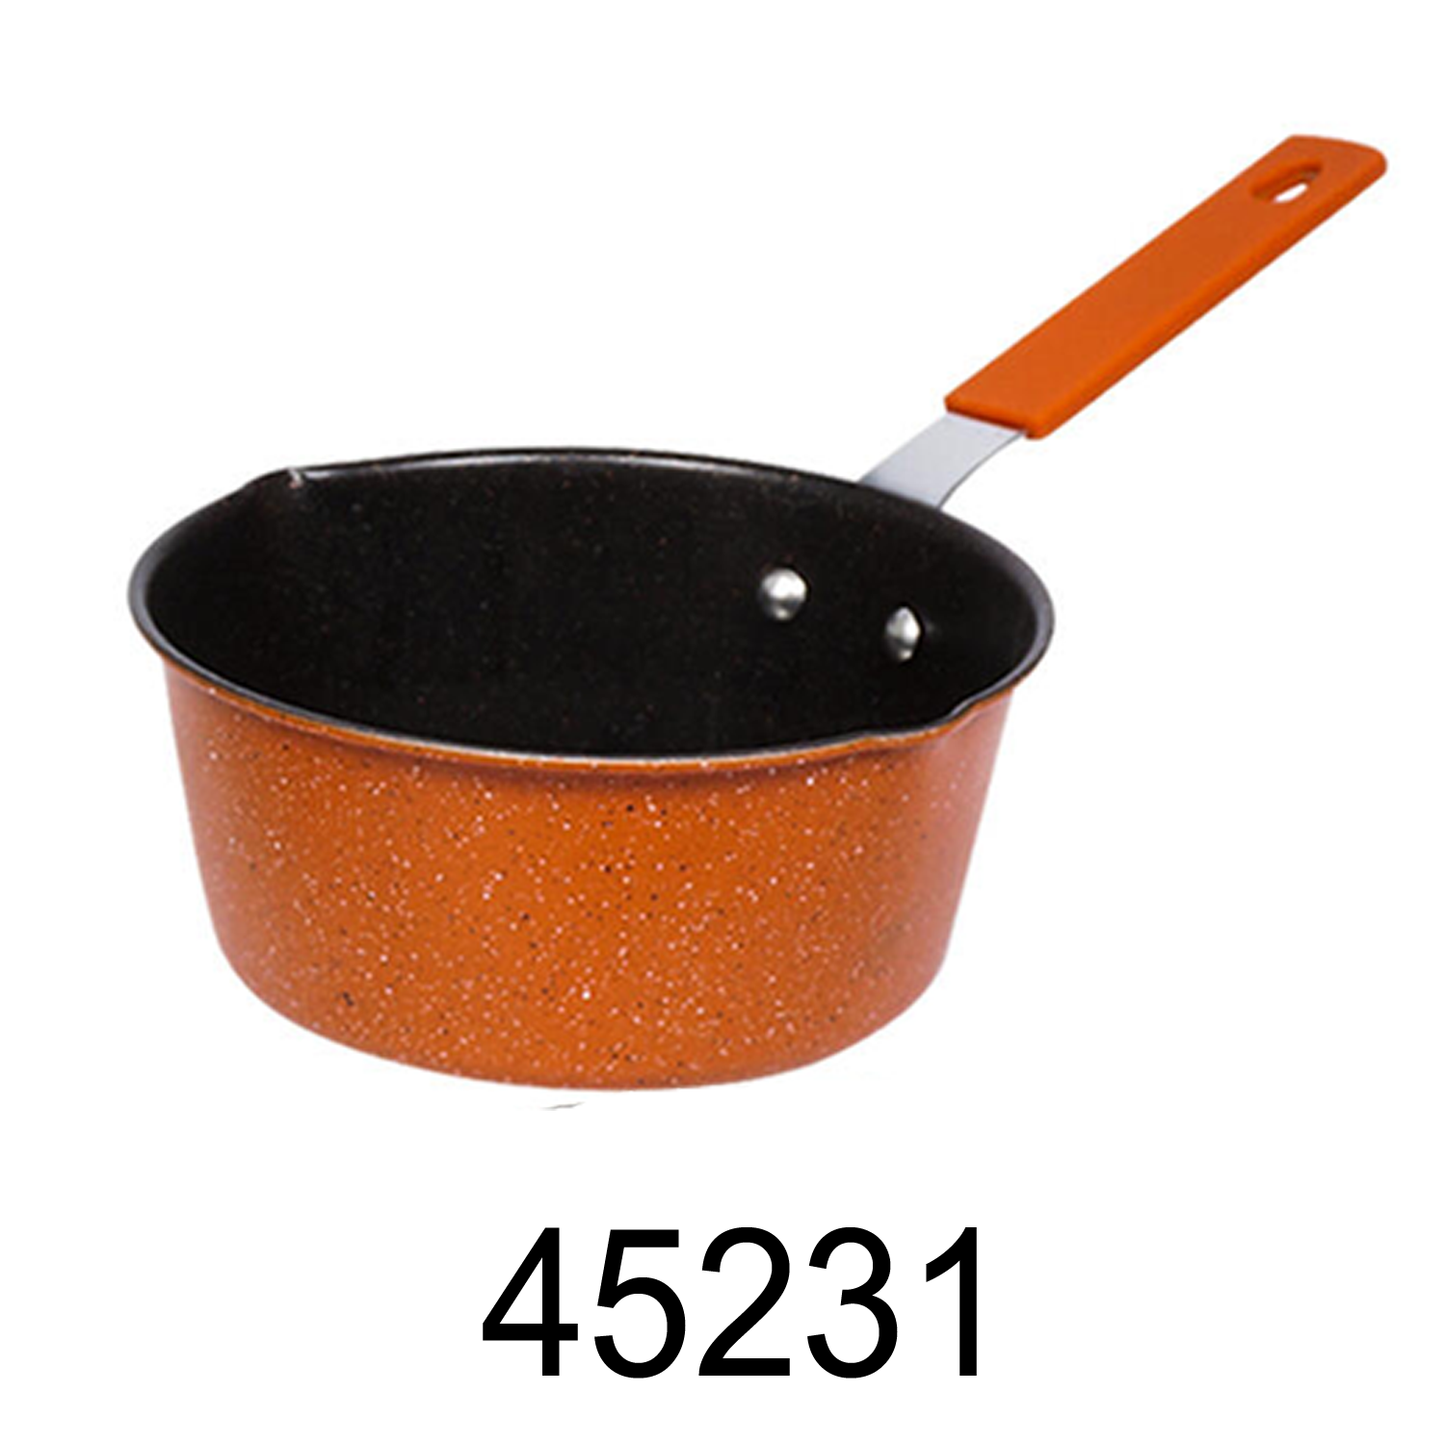 5.75" Sauce Pan-Orange